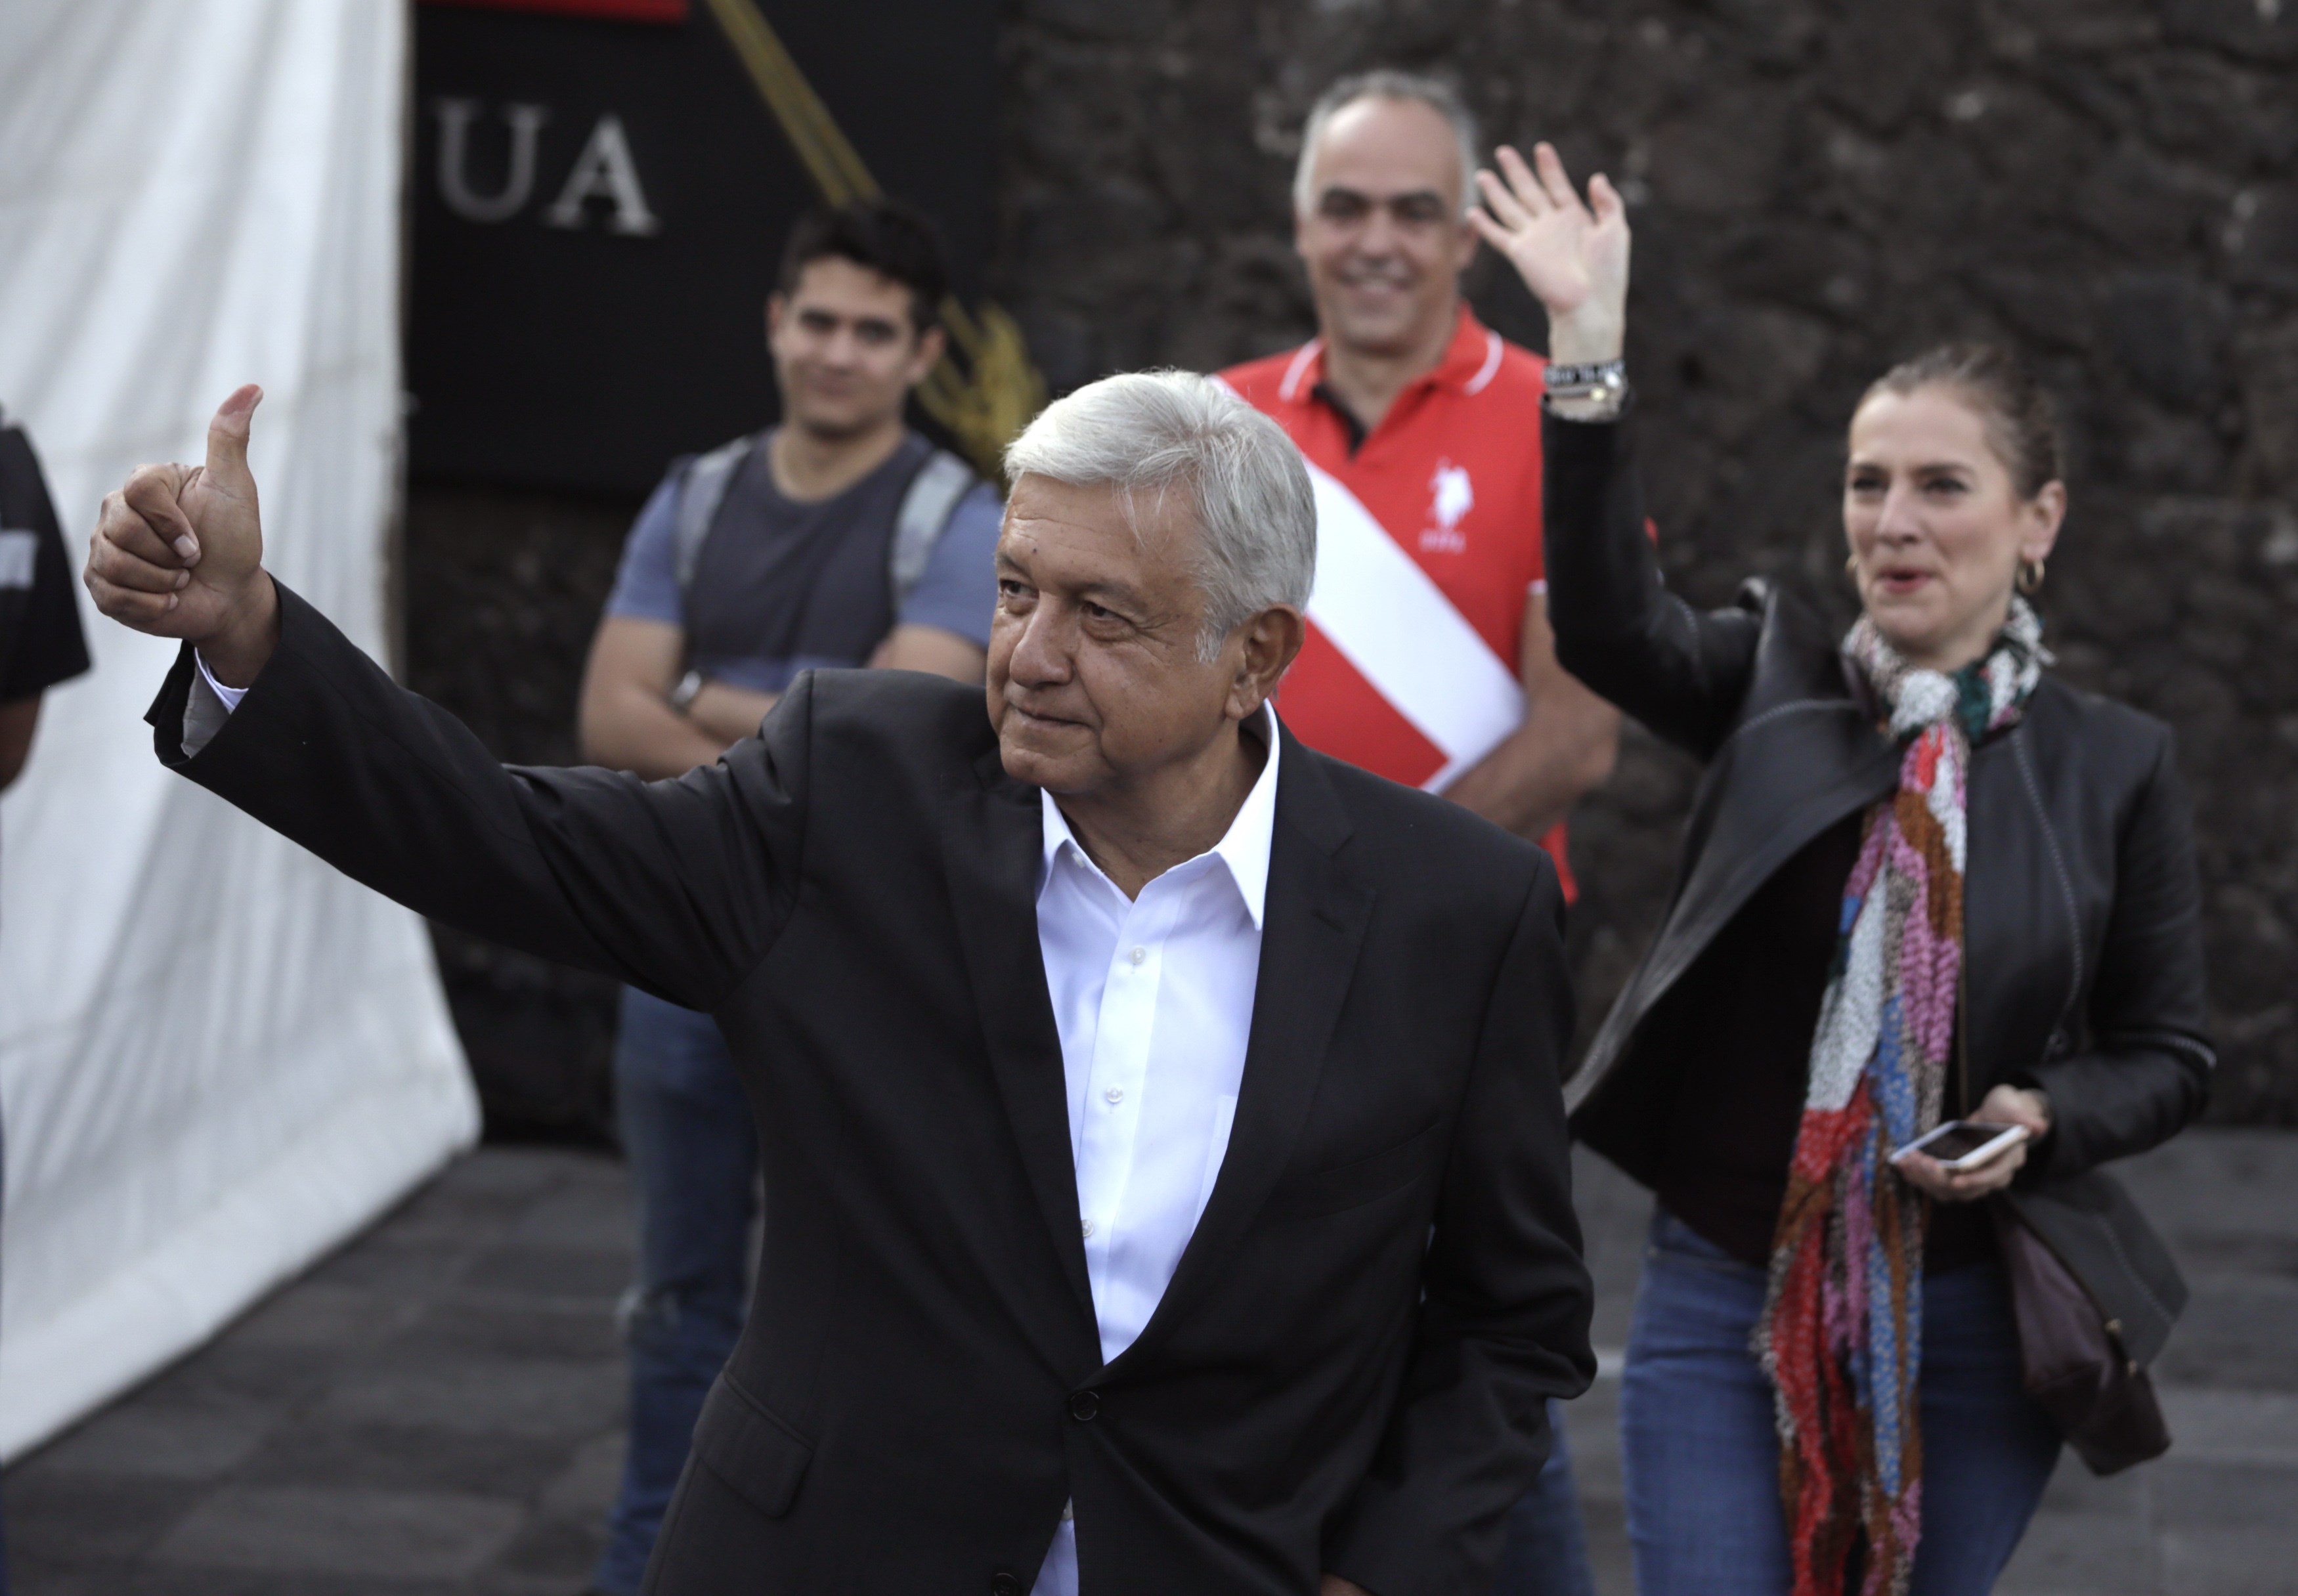 BM reitera respaldo a México tras resultados que favorecen a López Obrador